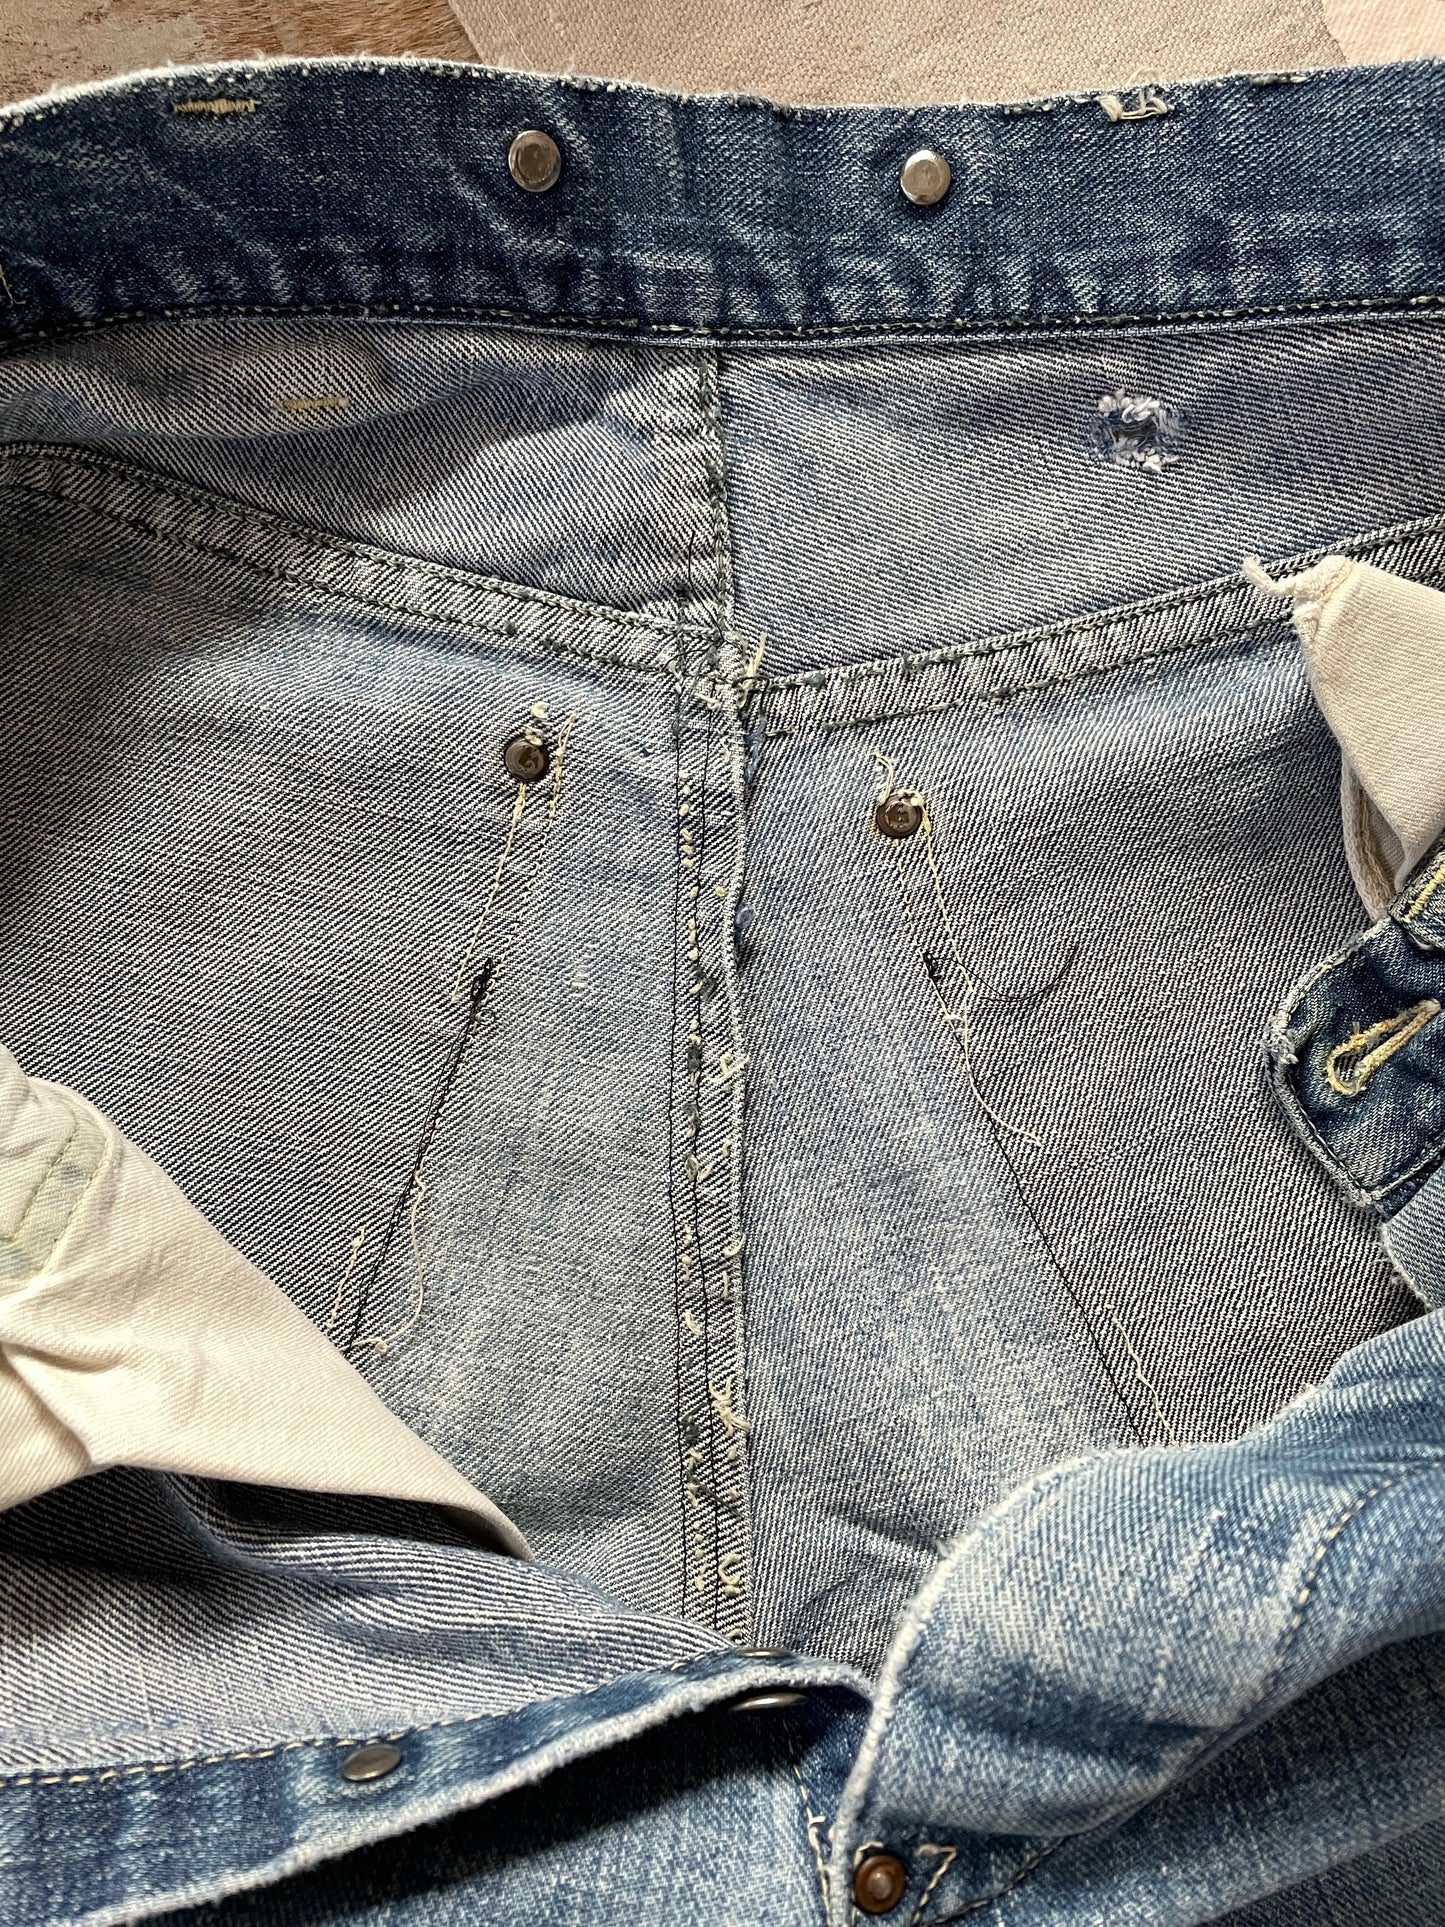 40s Can’t Bust ‘Em Crotch Rivet Jeans